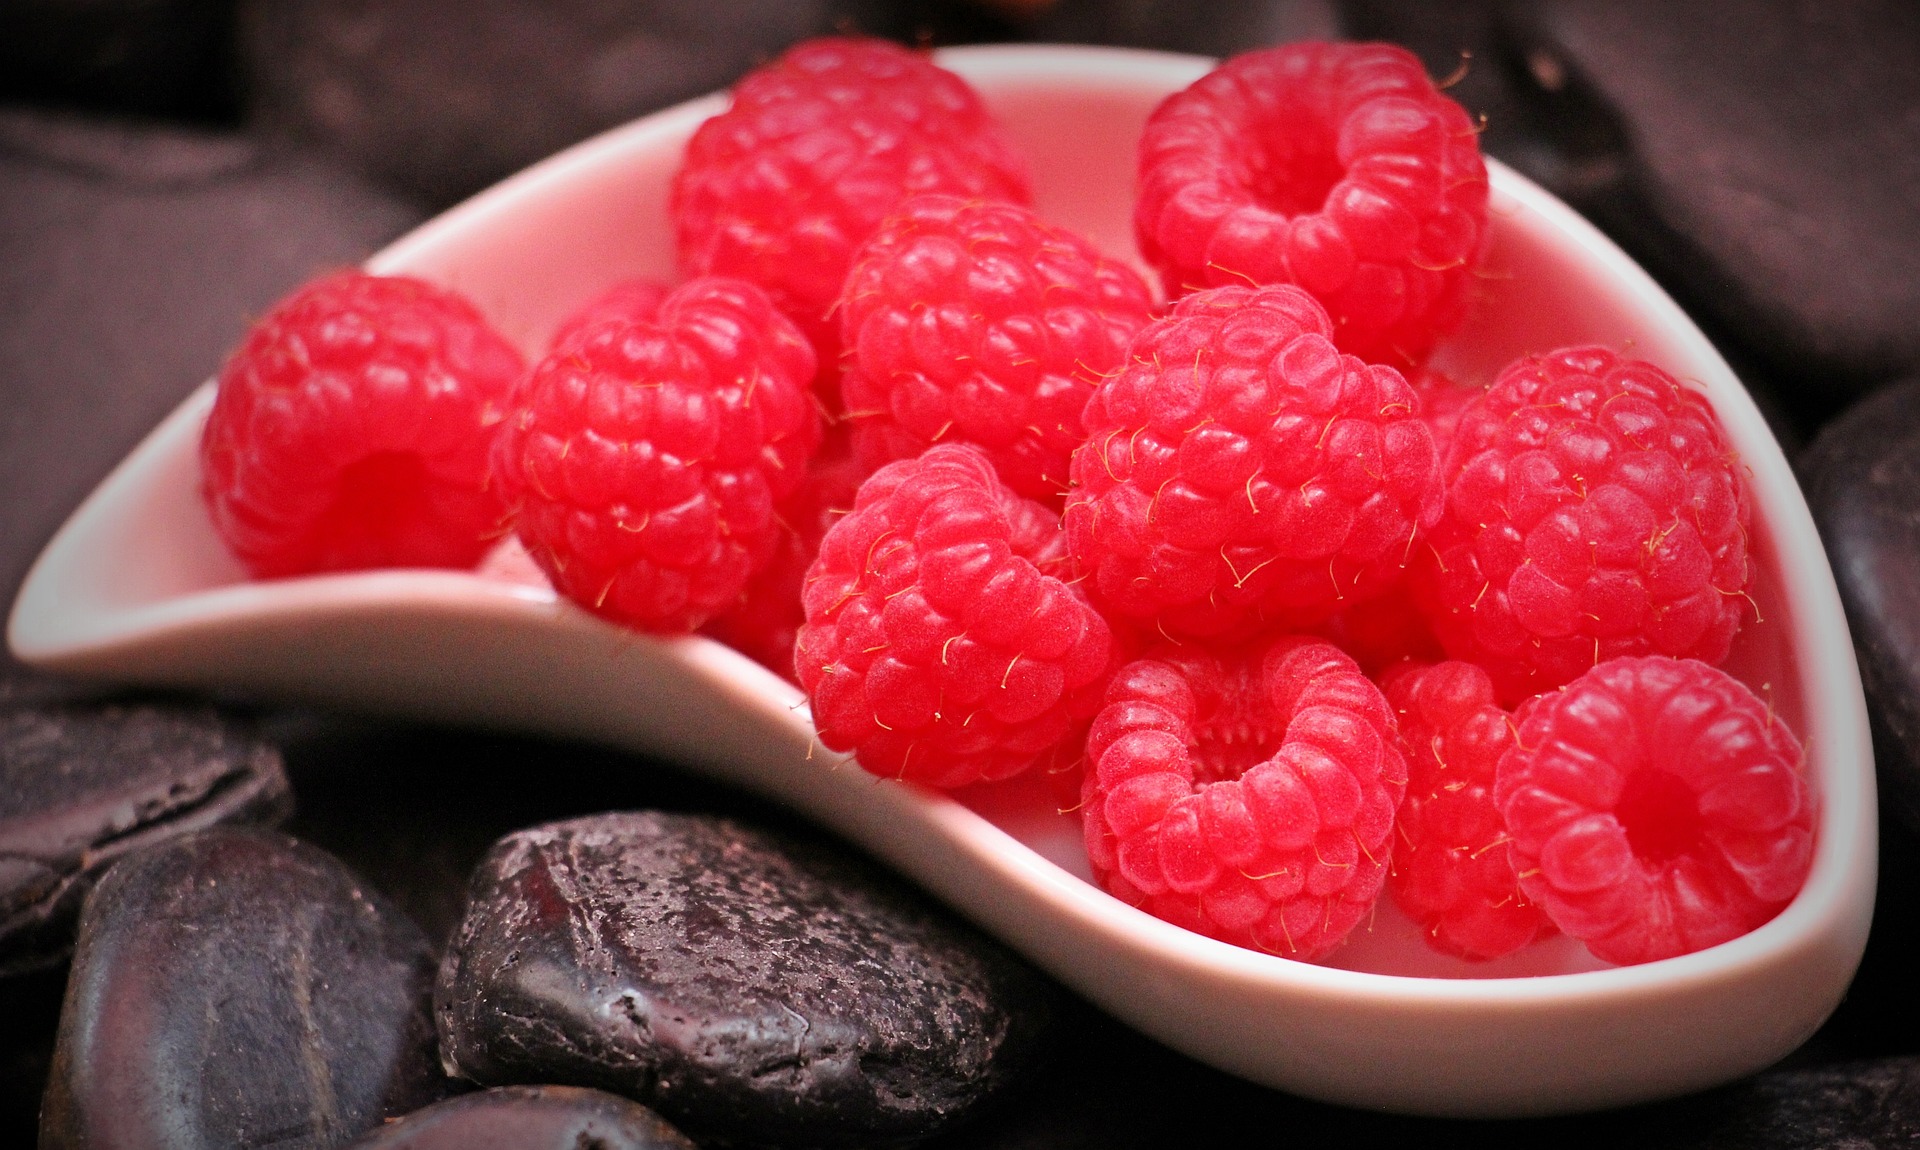 raspberries-1426859-1920.jpg